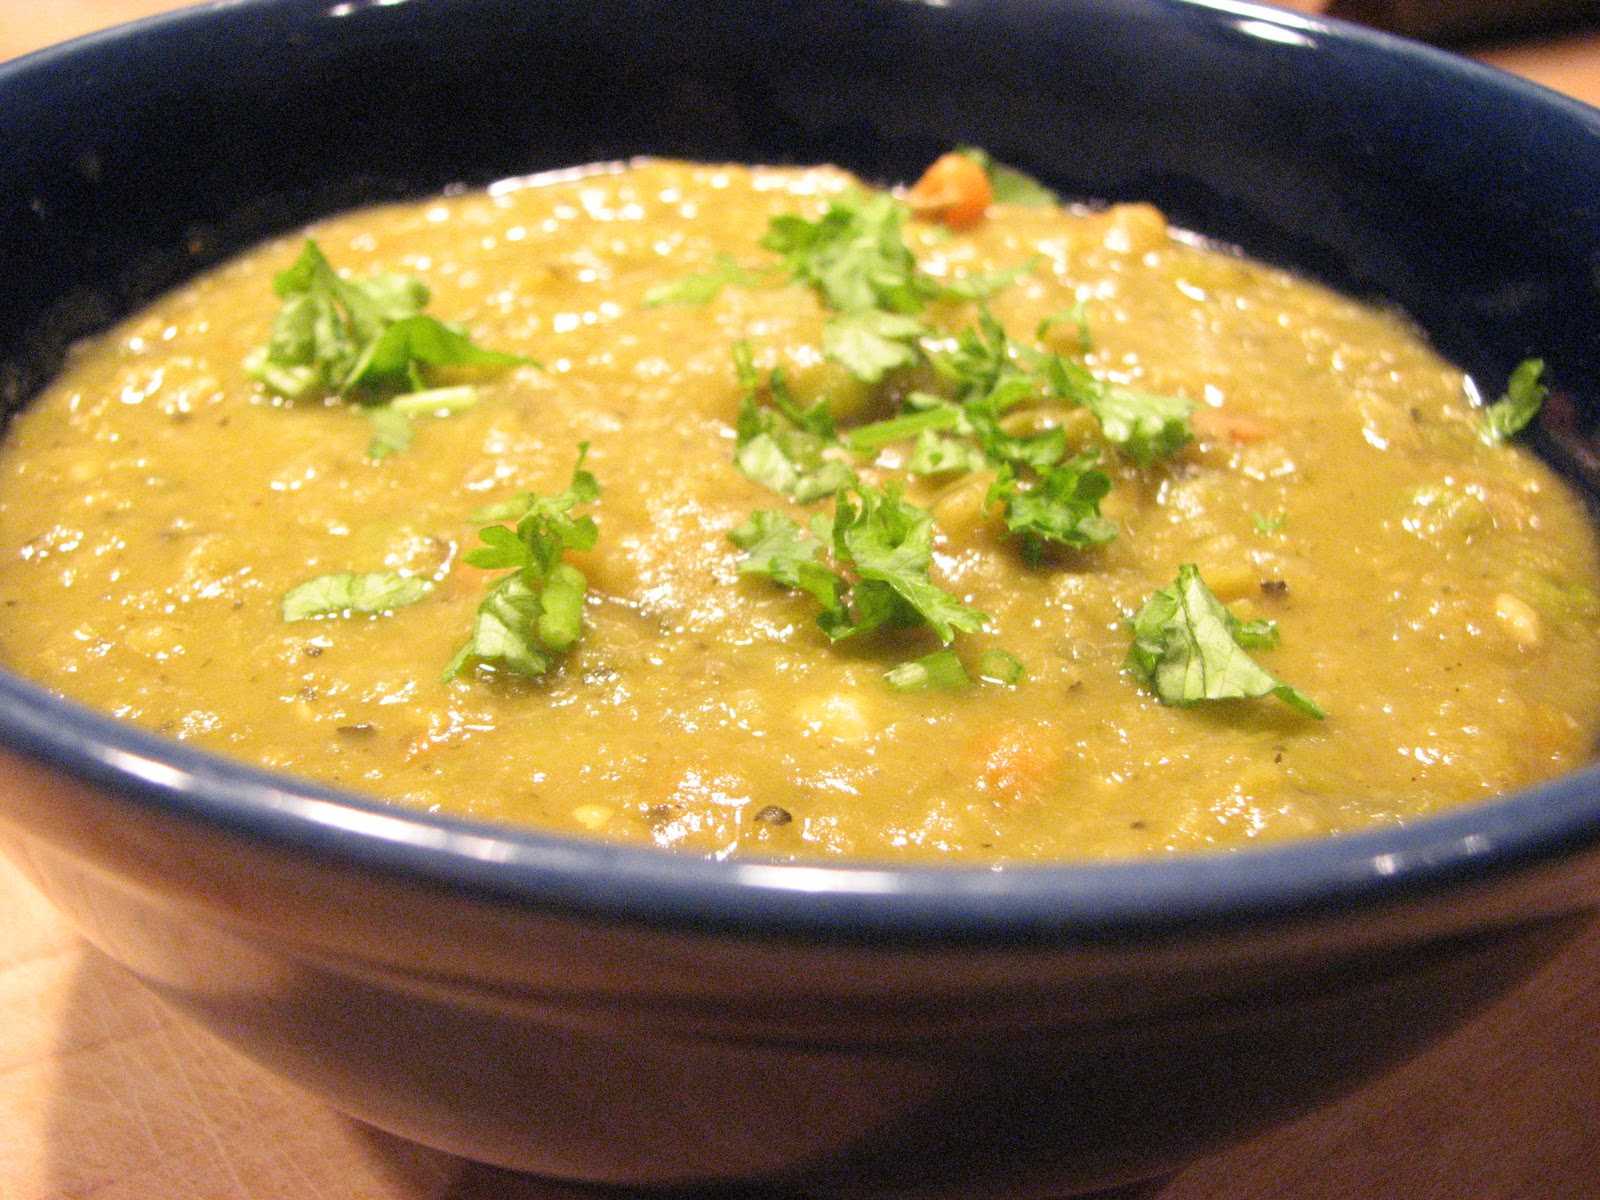 Как сварить гороховый суп чтобы горох разварился: советы по приготовлению, рецепты – рецепты с фото